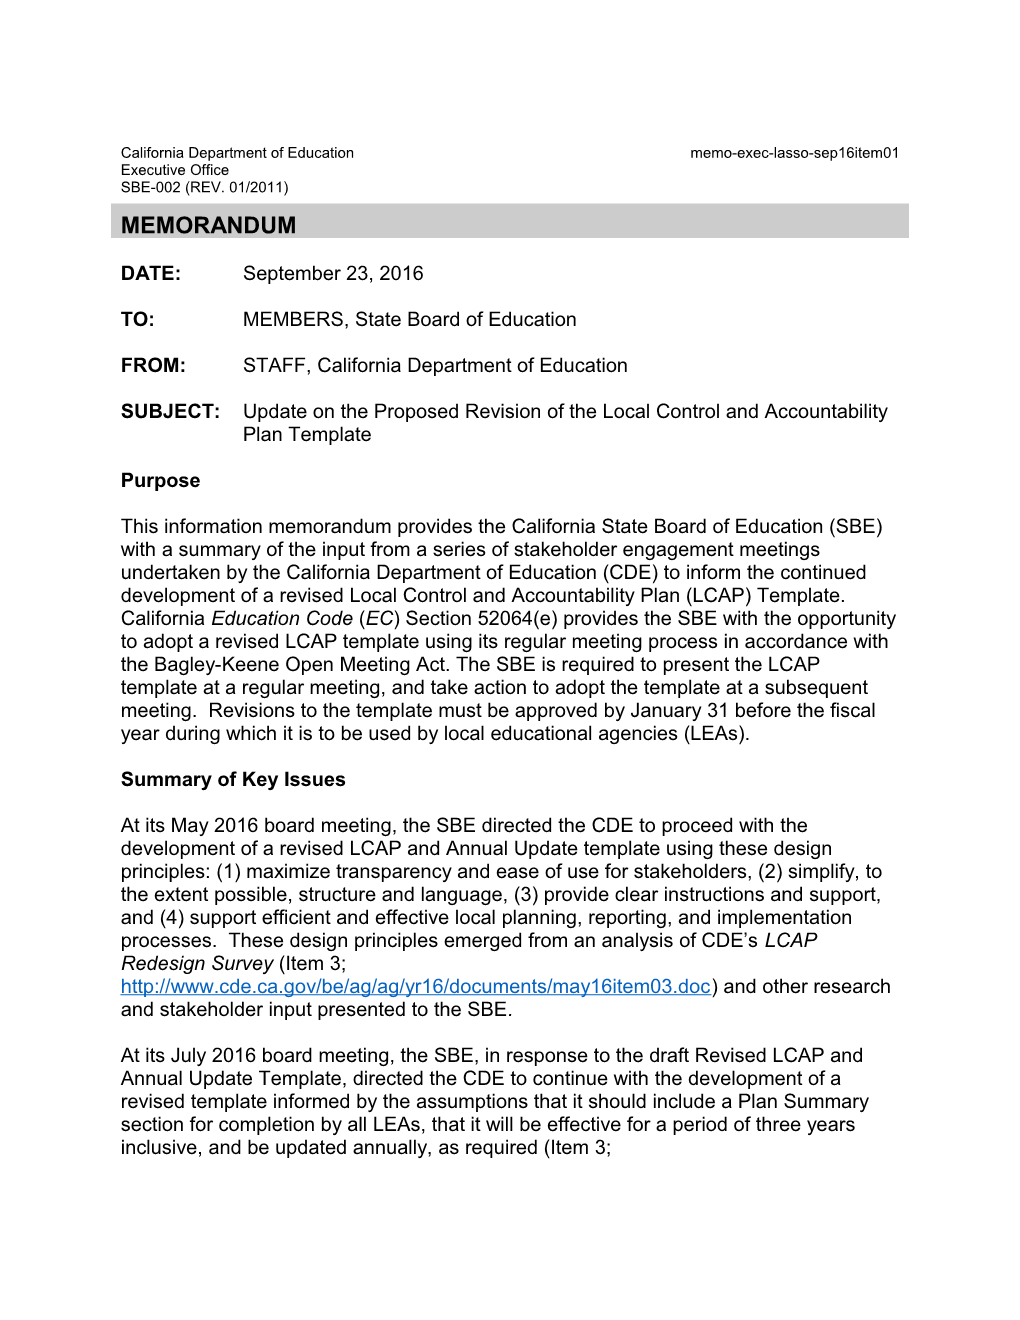 September 2016 Memo EXEC LASSO Item 01 - Information Memorandum (CA State Board of Education)